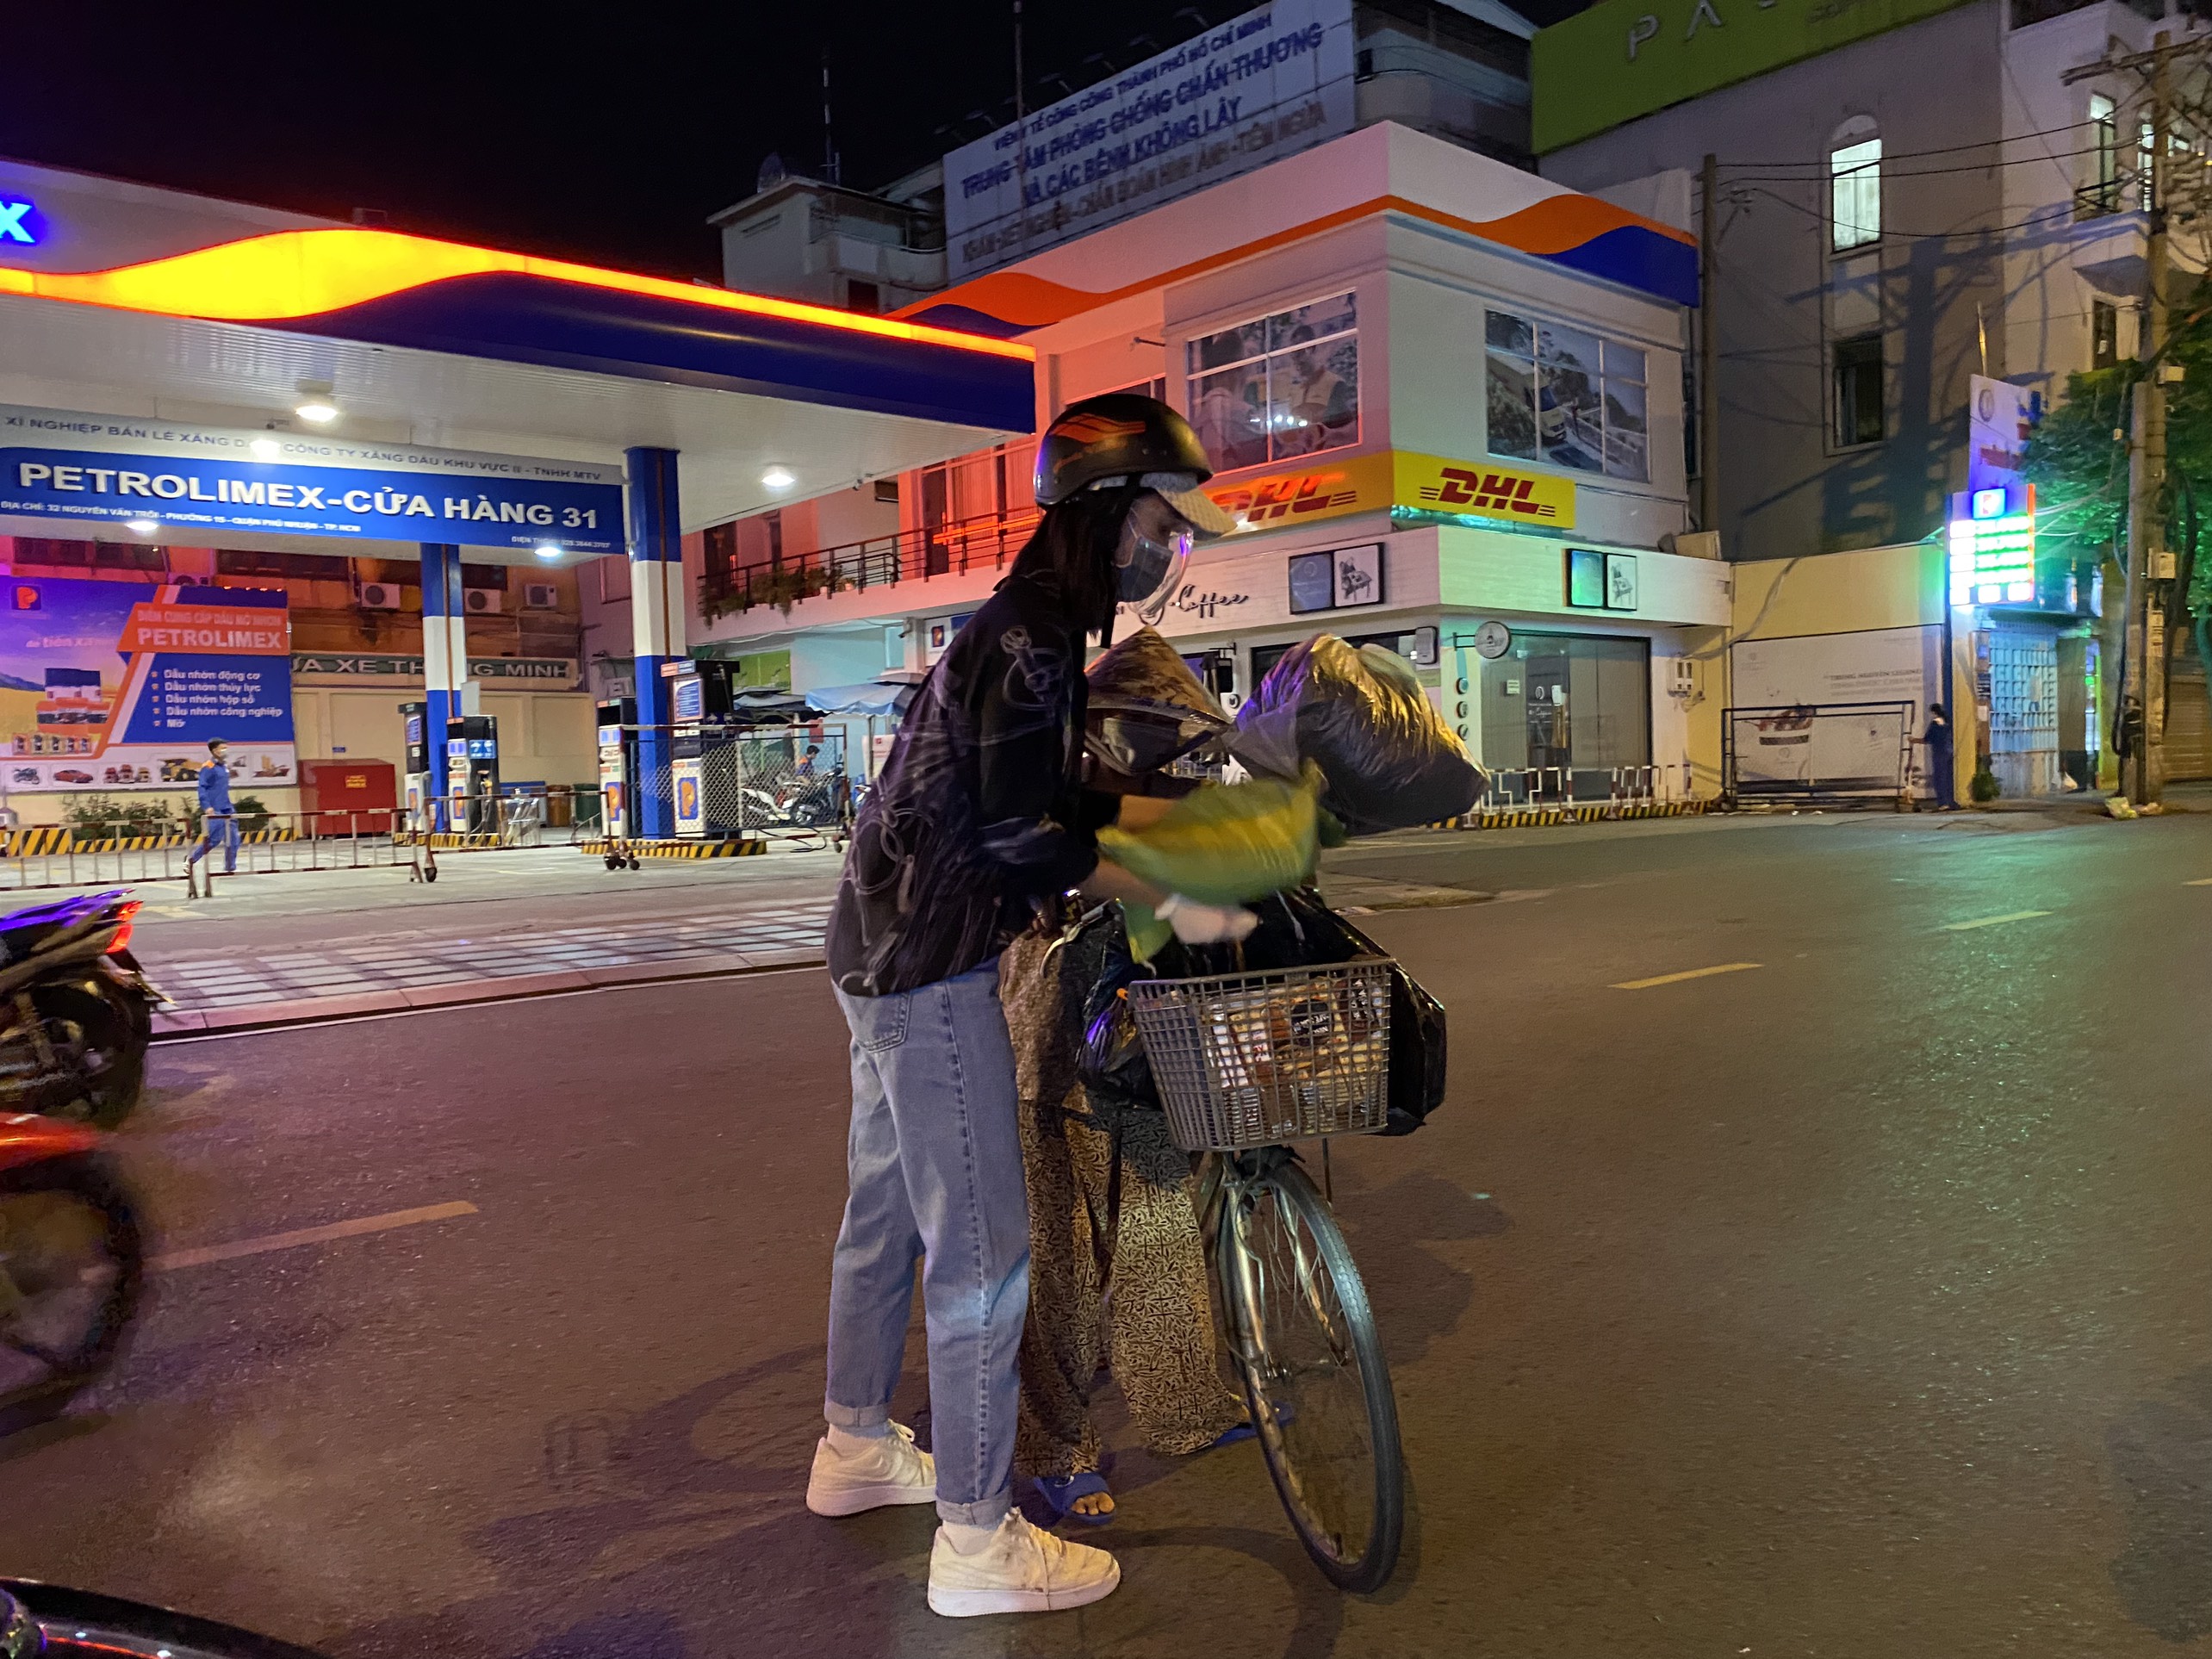 Hoa Hậu Tiểu Vy đi xe máy trao tặng 3 tấn gạo cho người dân khó khăn do ảnh hưởng của dịch Covid-19 - ảnh 4